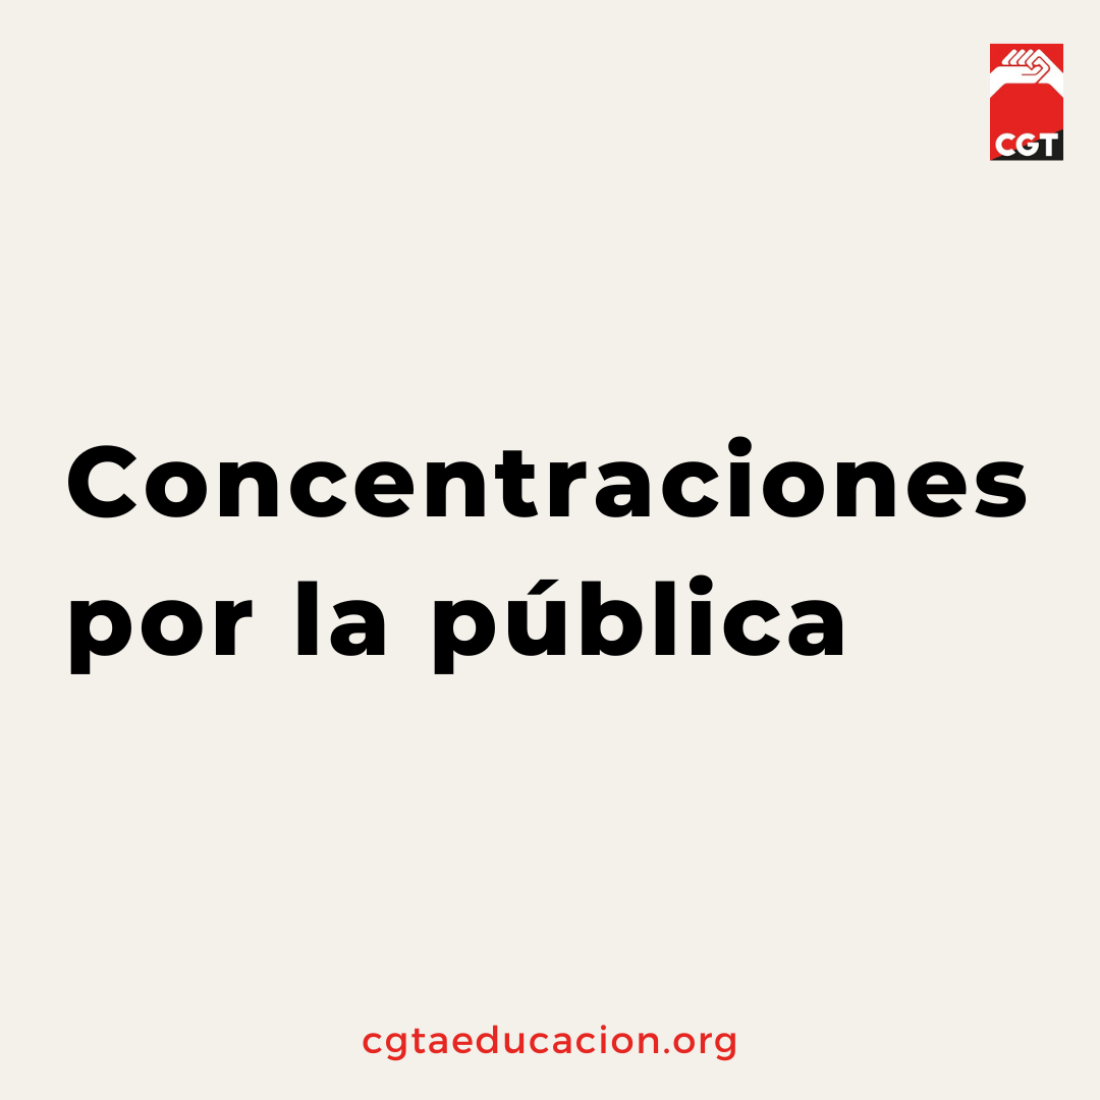 Concentraciones por la pública